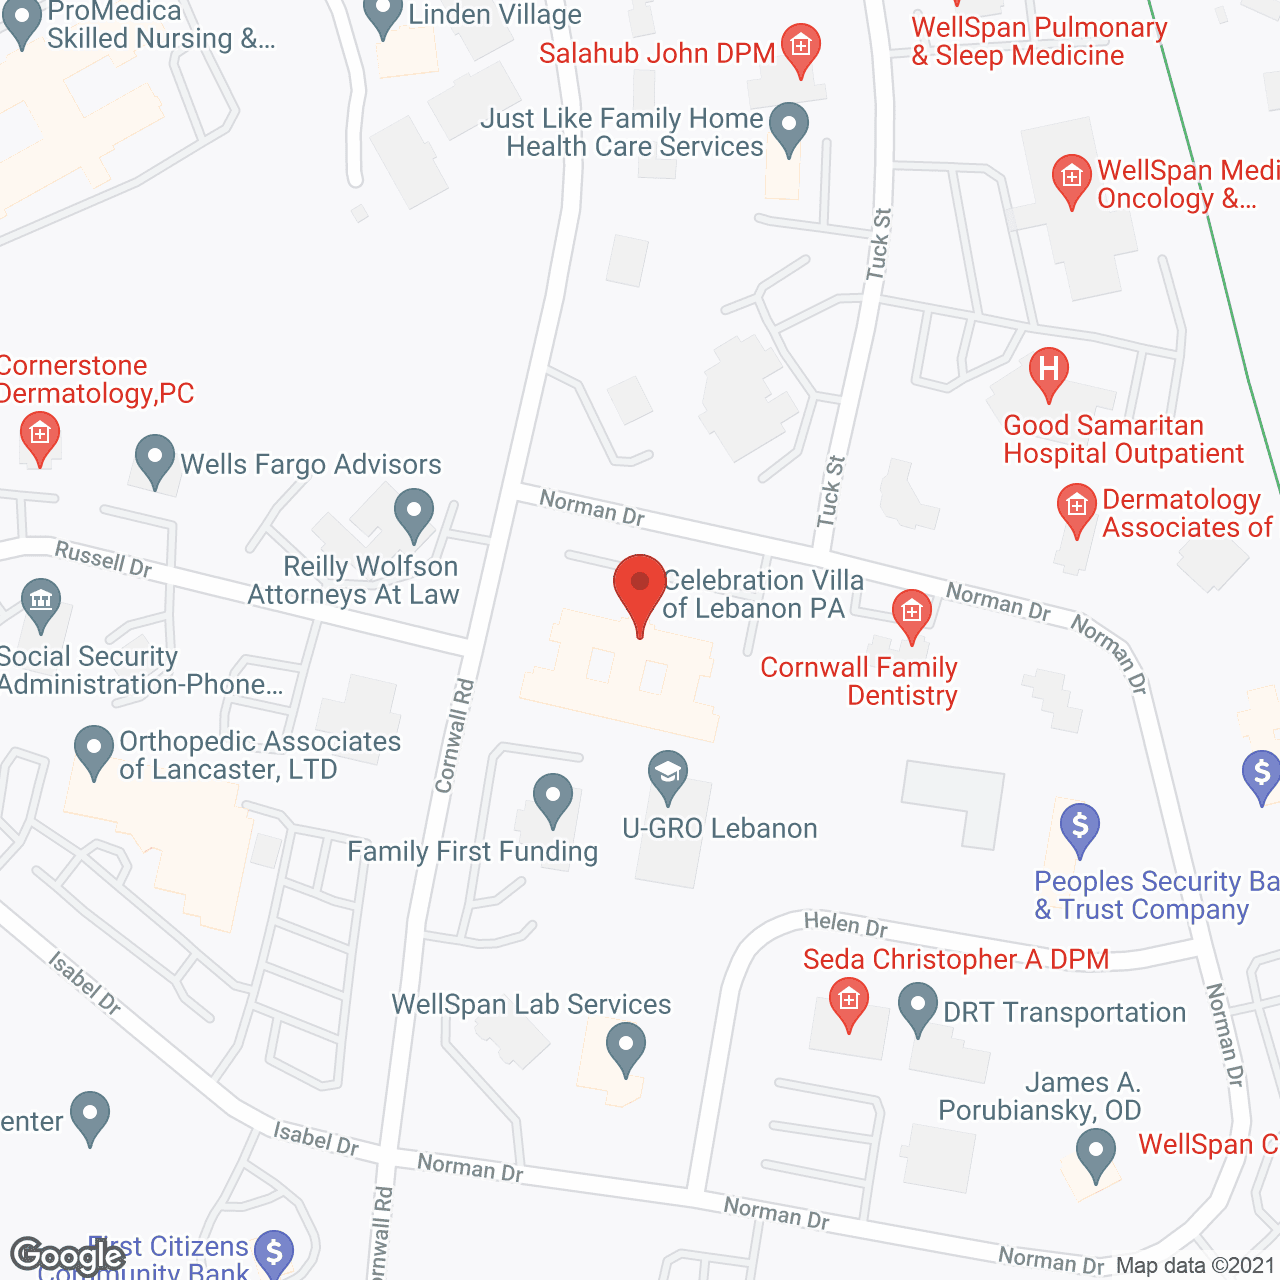 Celebration Villa of Lebanon in google map